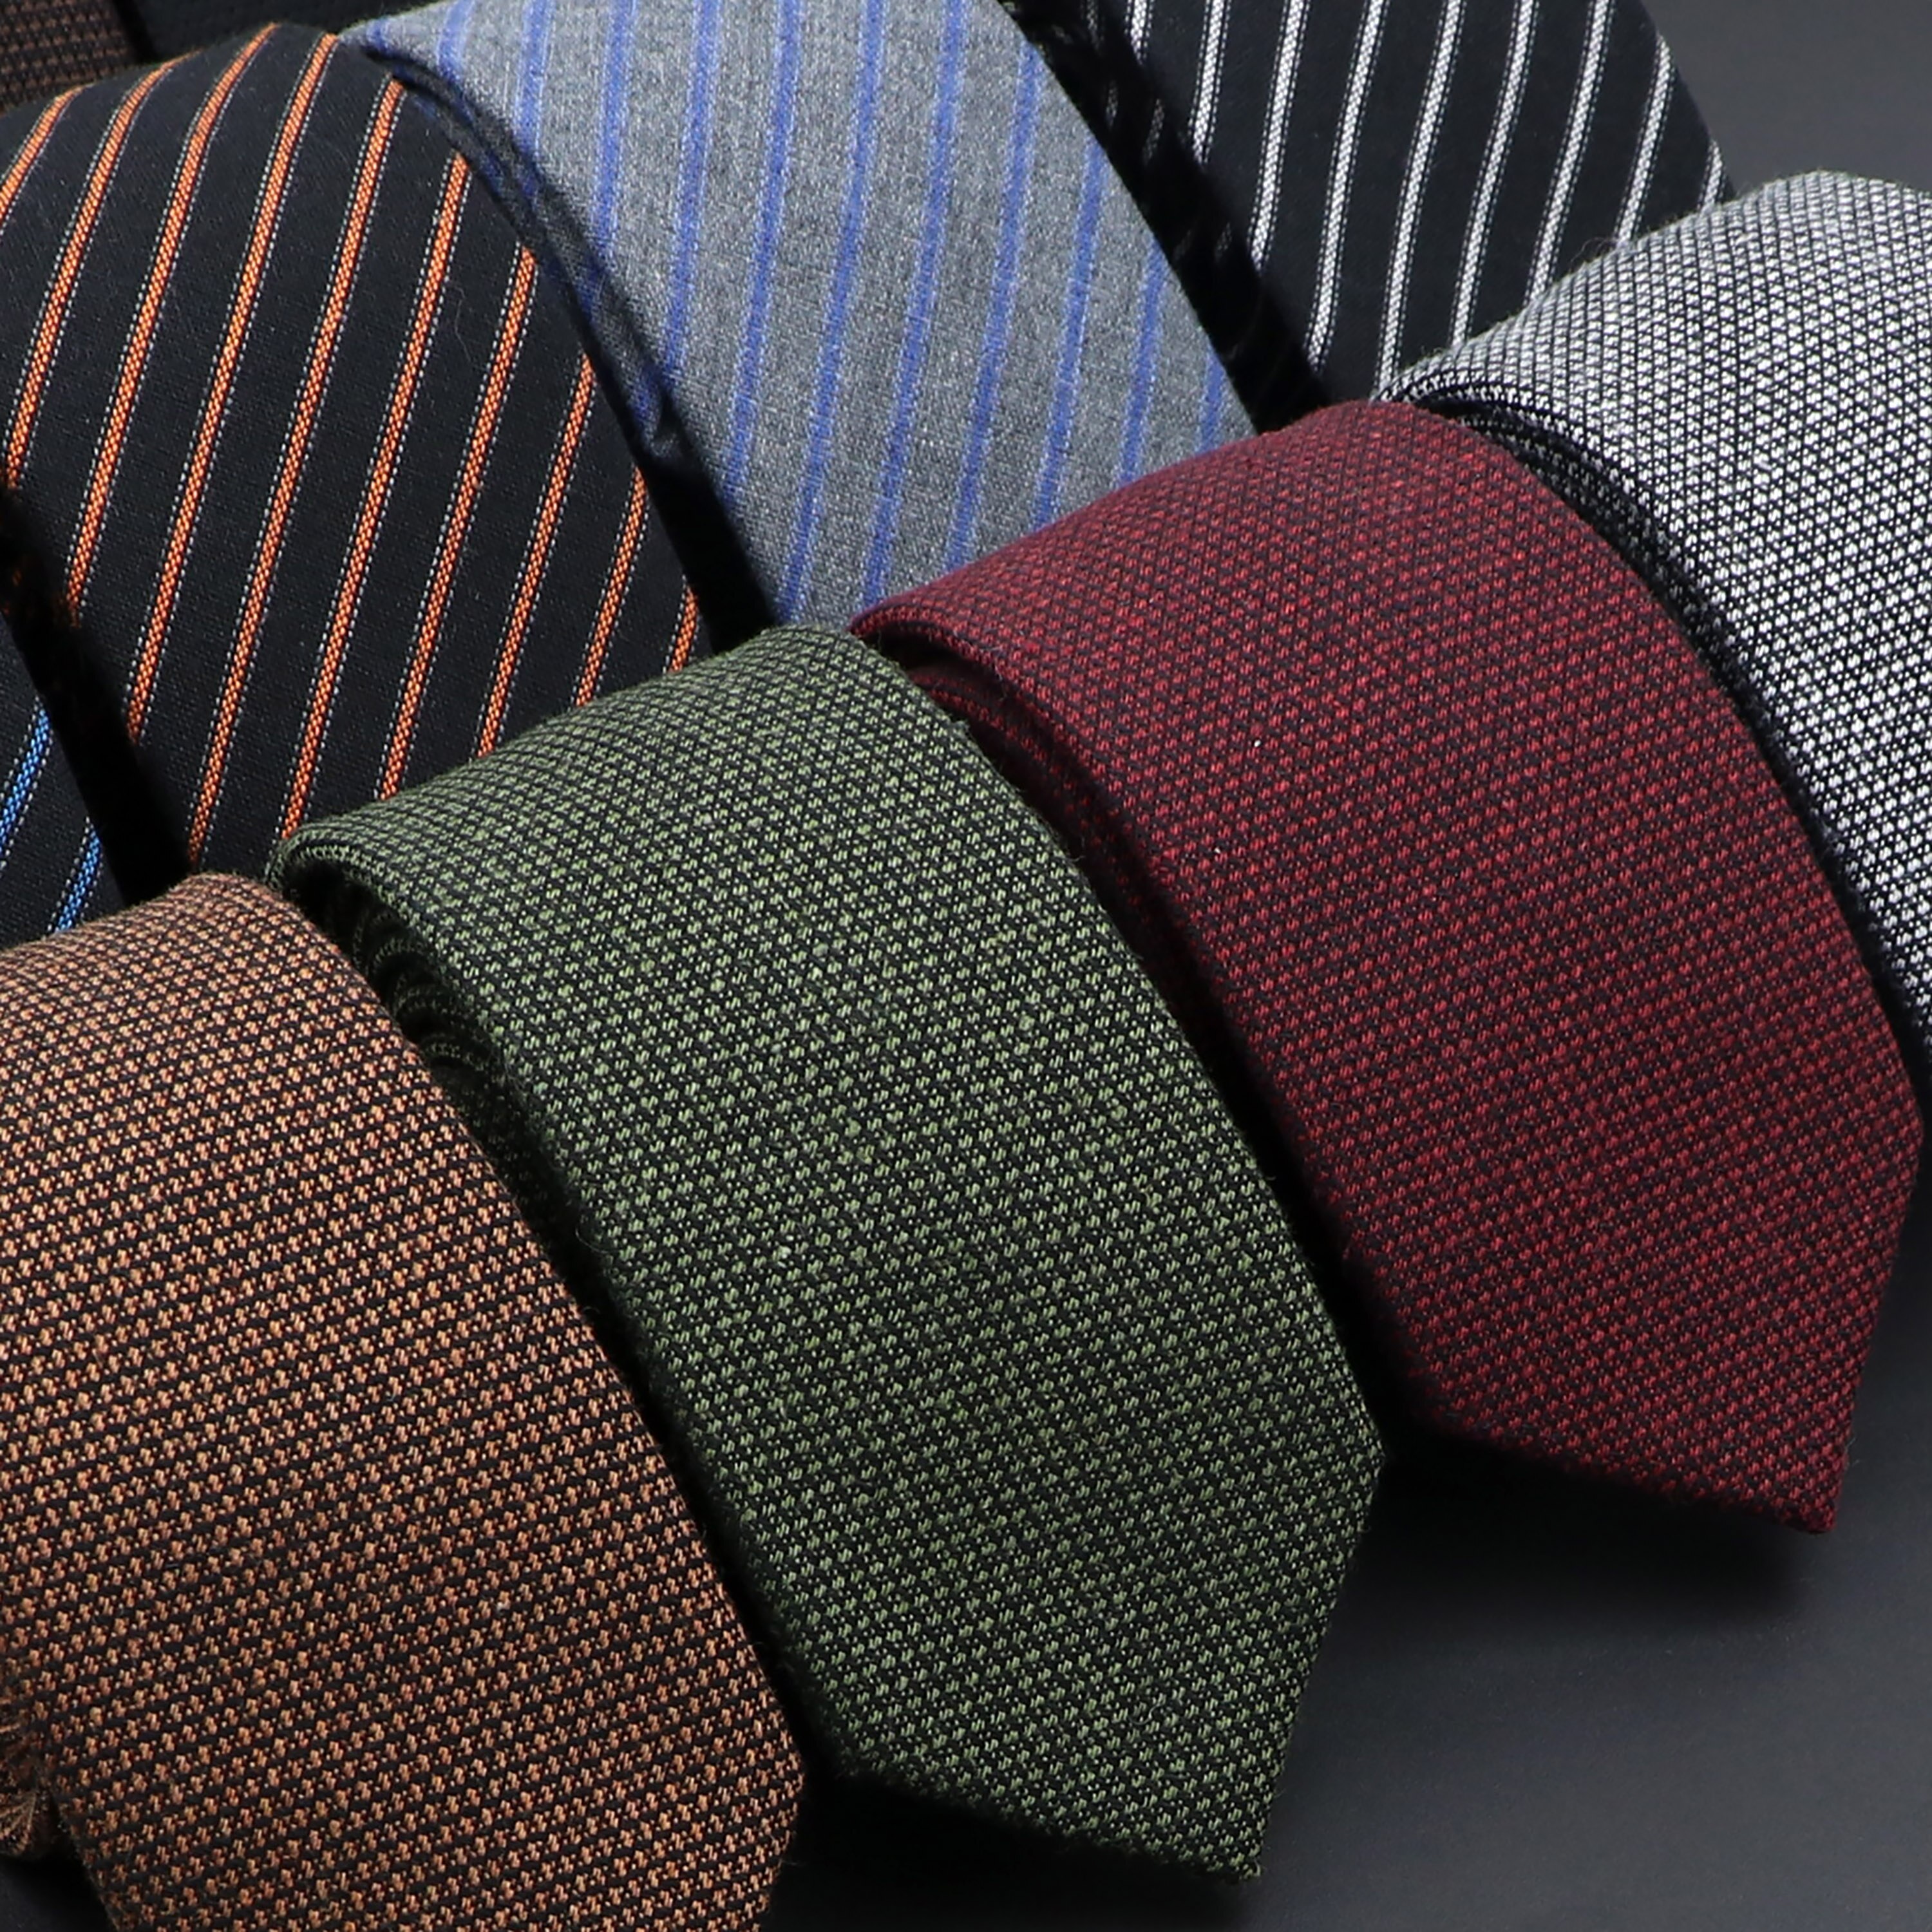 Corbata hecha a mano de algodón sólido de alta calidad para hombres, corbata de cuello estrecho a rayas, accesorios de corbata casuales delgados de Cachemira, originales